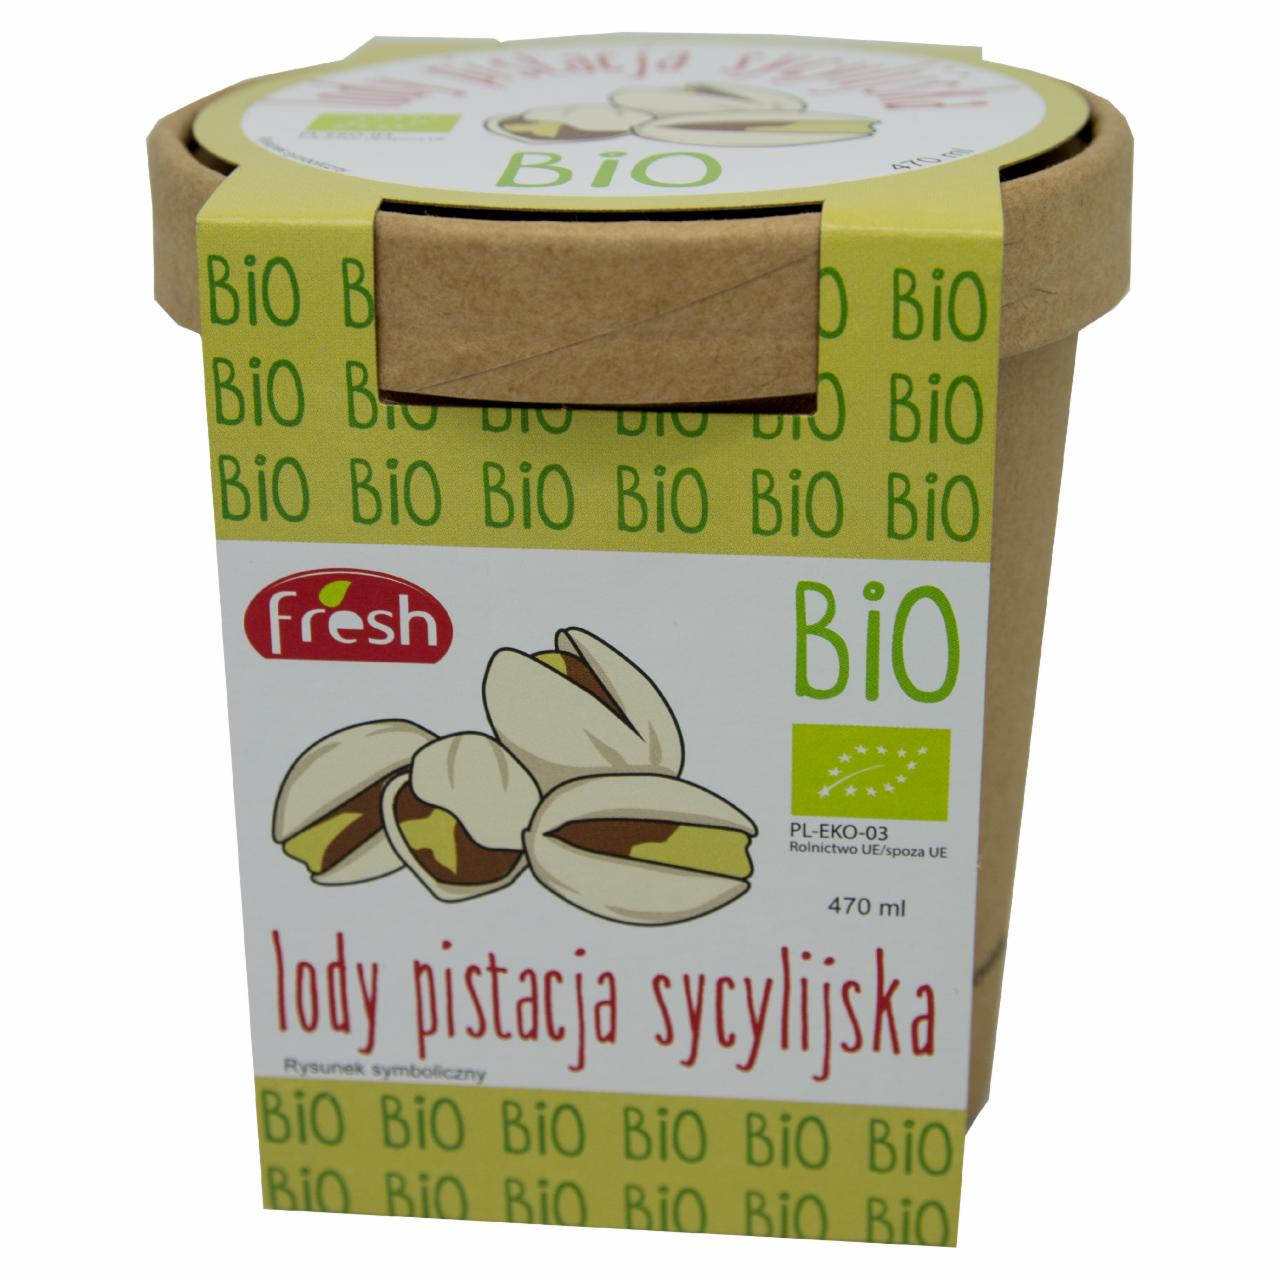 Zdjęcia - Bio Lody pistacja sycylijska 470 ml